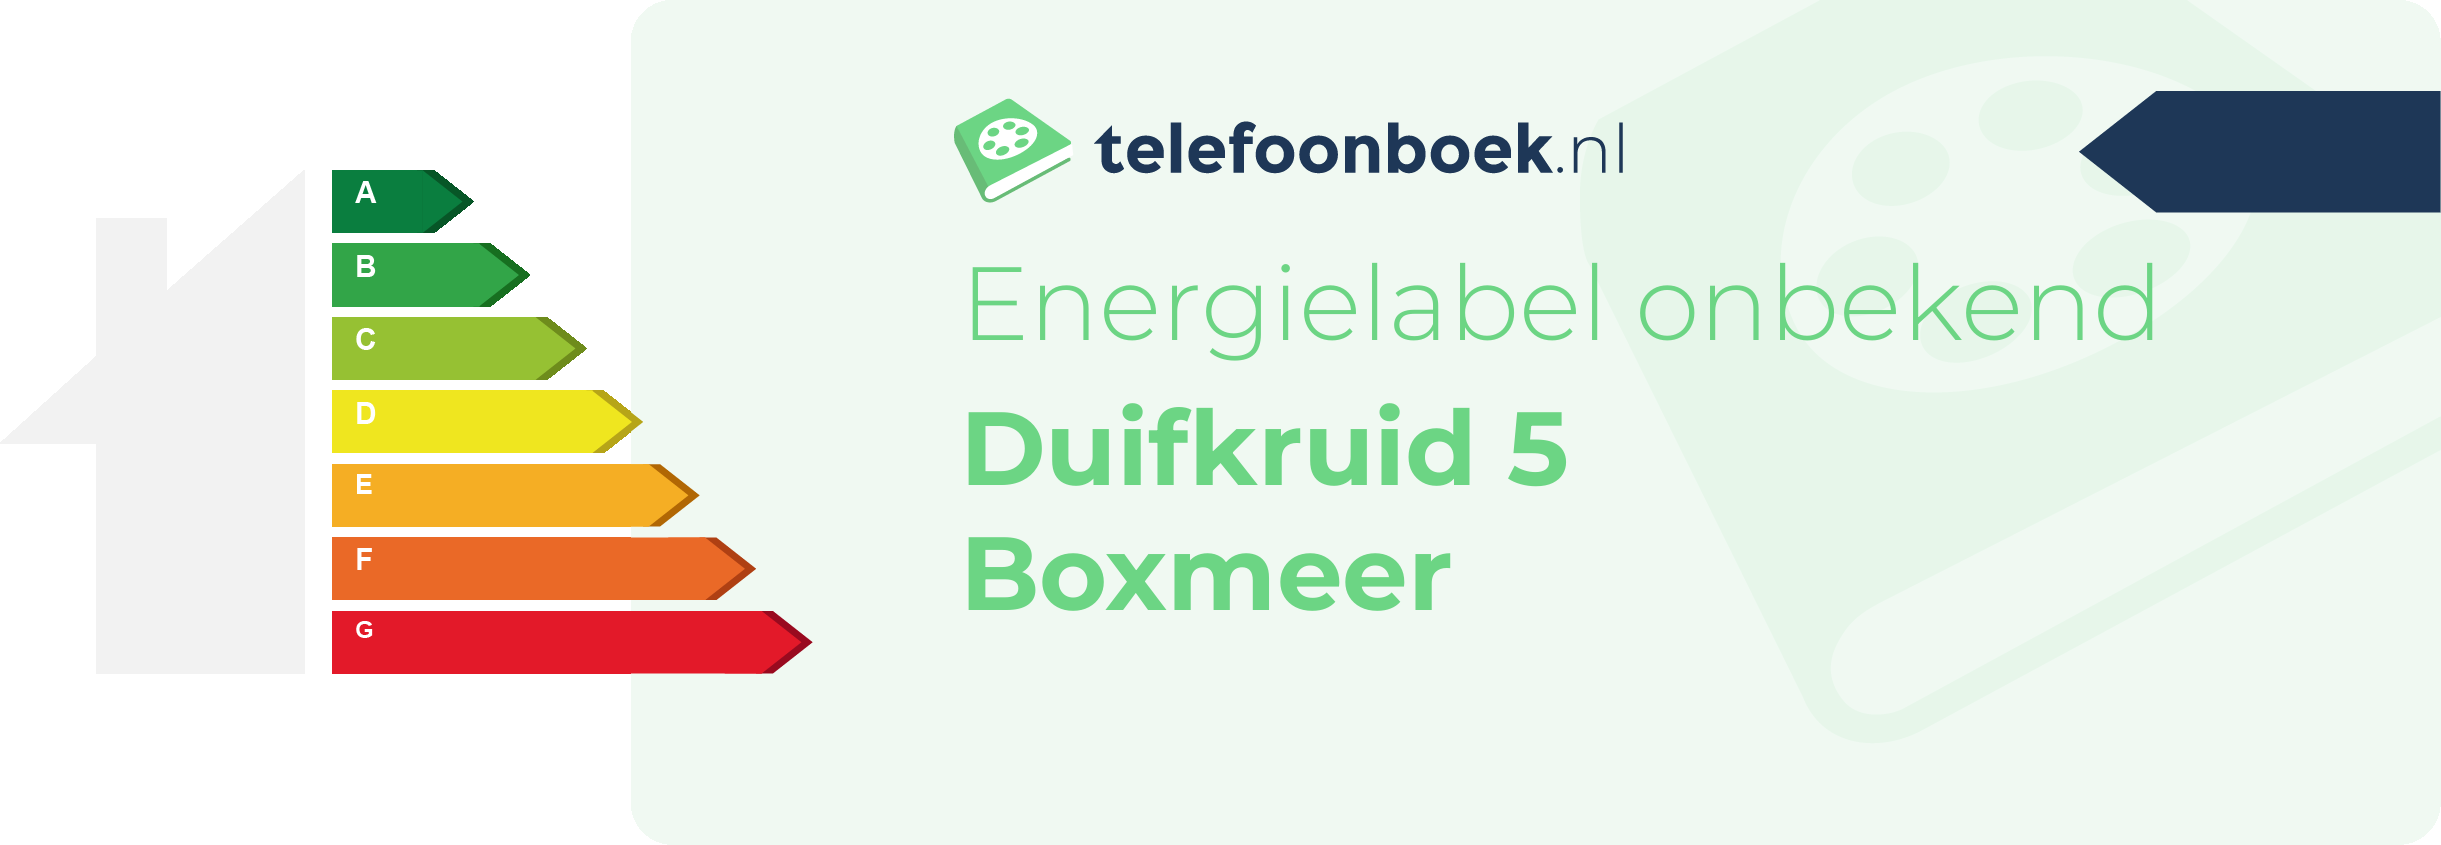 Energielabel Duifkruid 5 Boxmeer